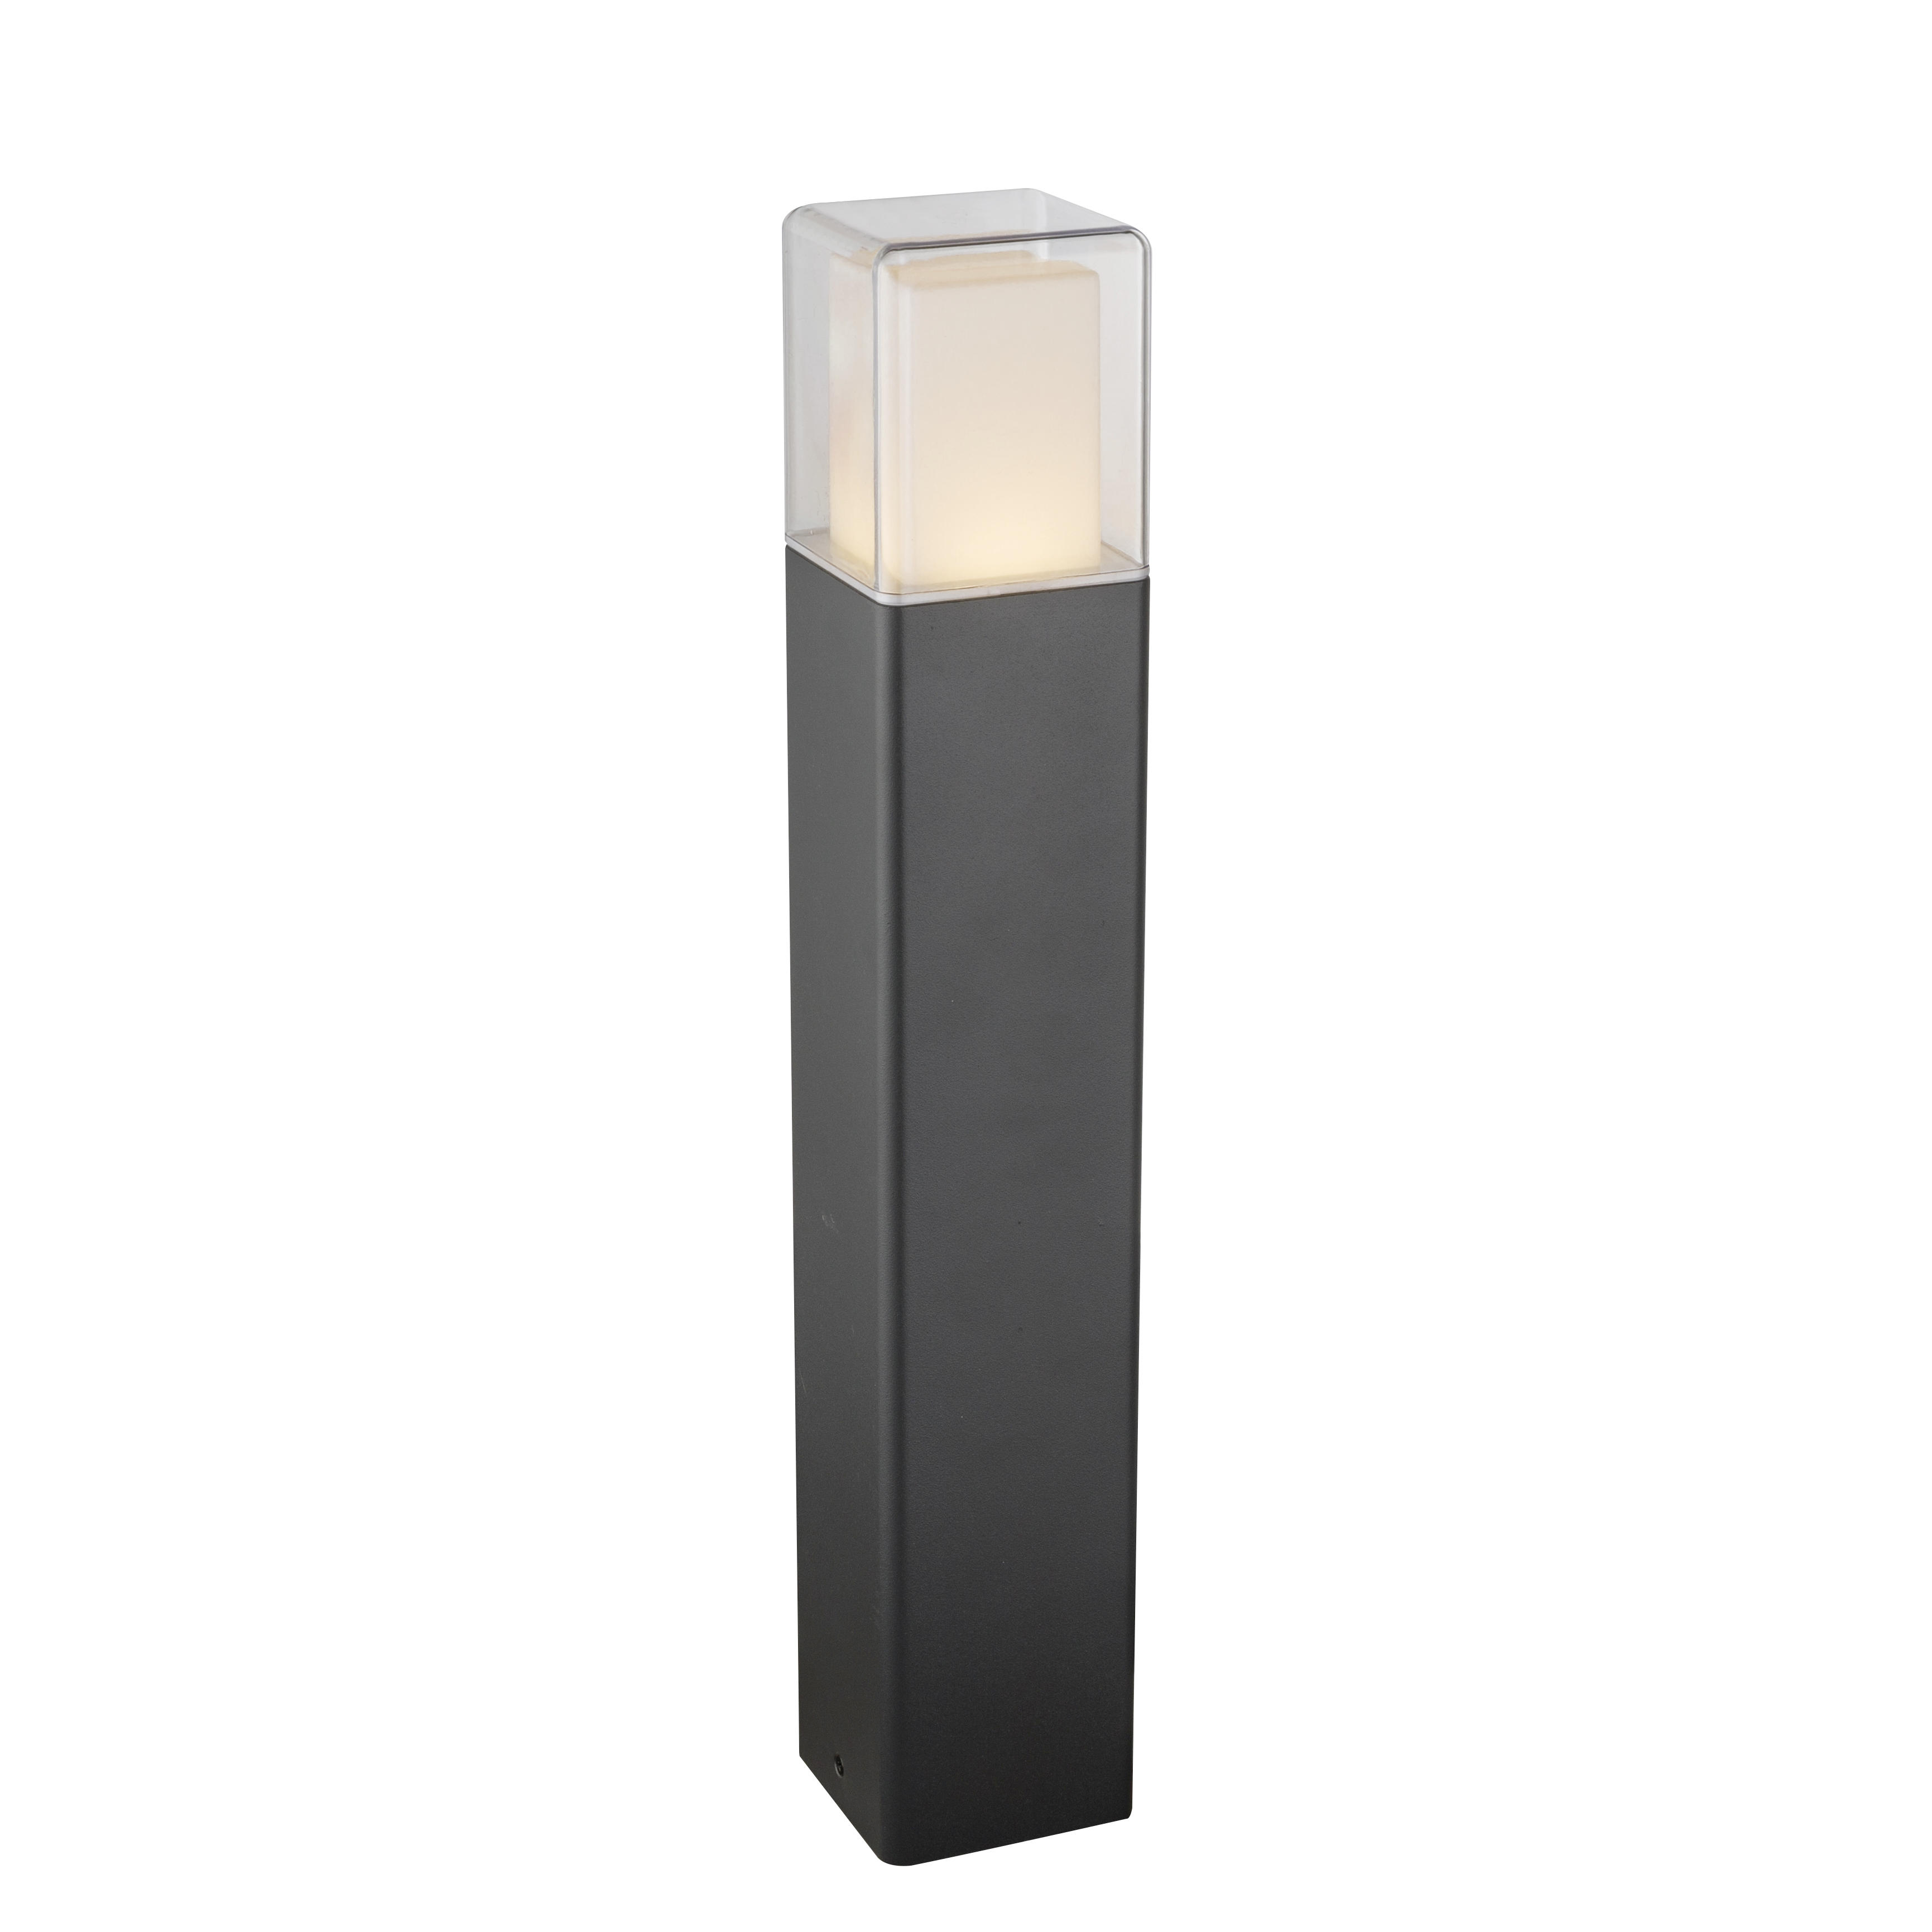 LED-AUßENLEUCHTE 8,5/8,5/50 cm   - Klar/Opal, Design, Kunststoff/Metall (8,5/8,5/50cm) - Globo